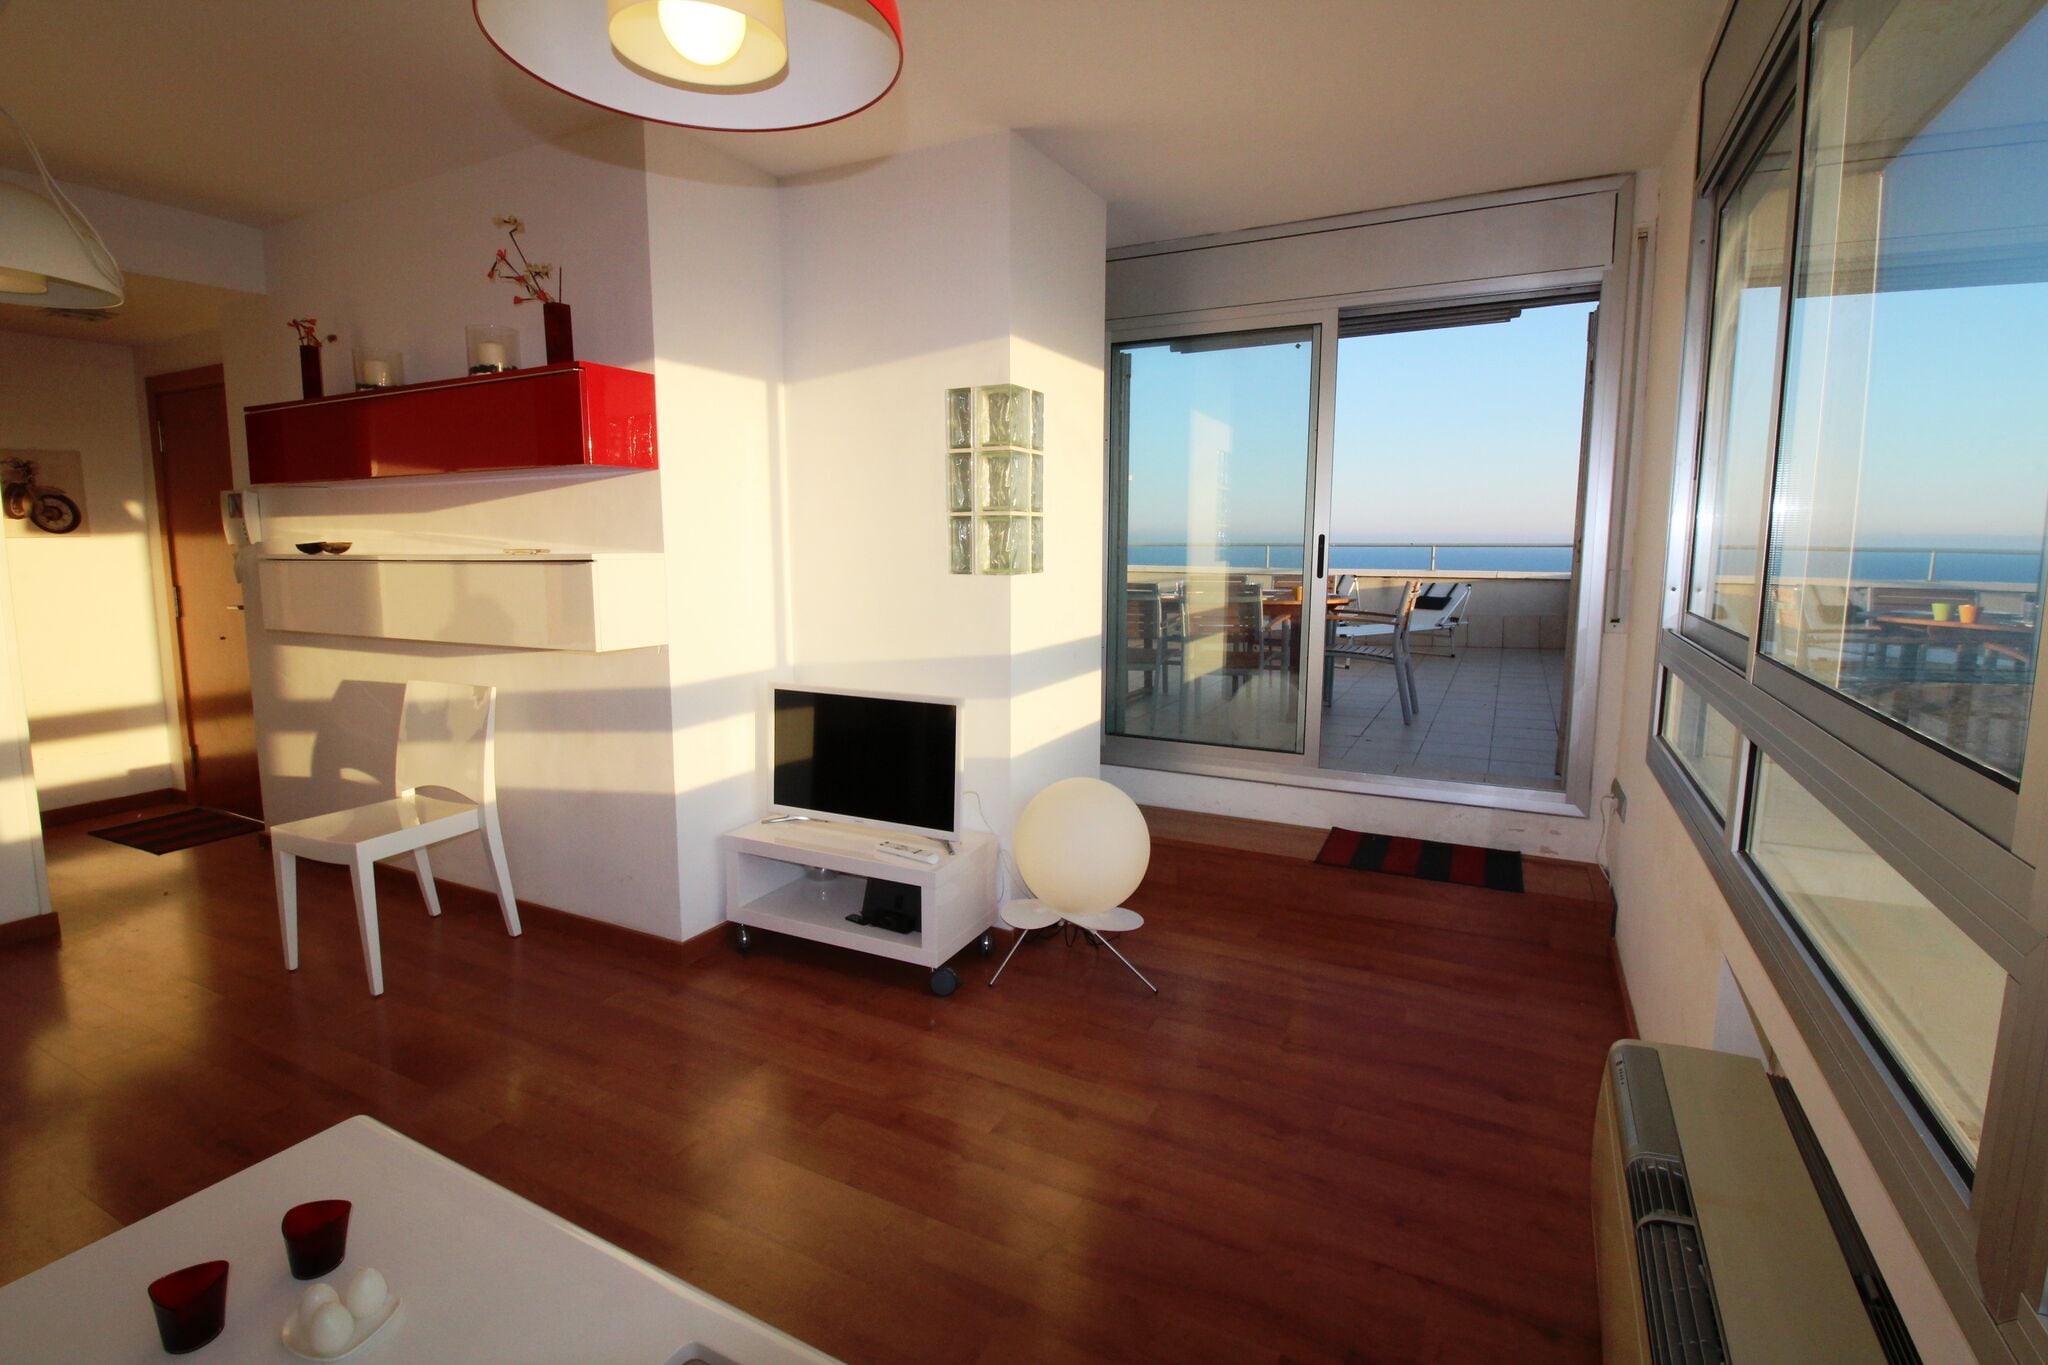 Appartement met uitzicht op zee, loopafstand van het strand